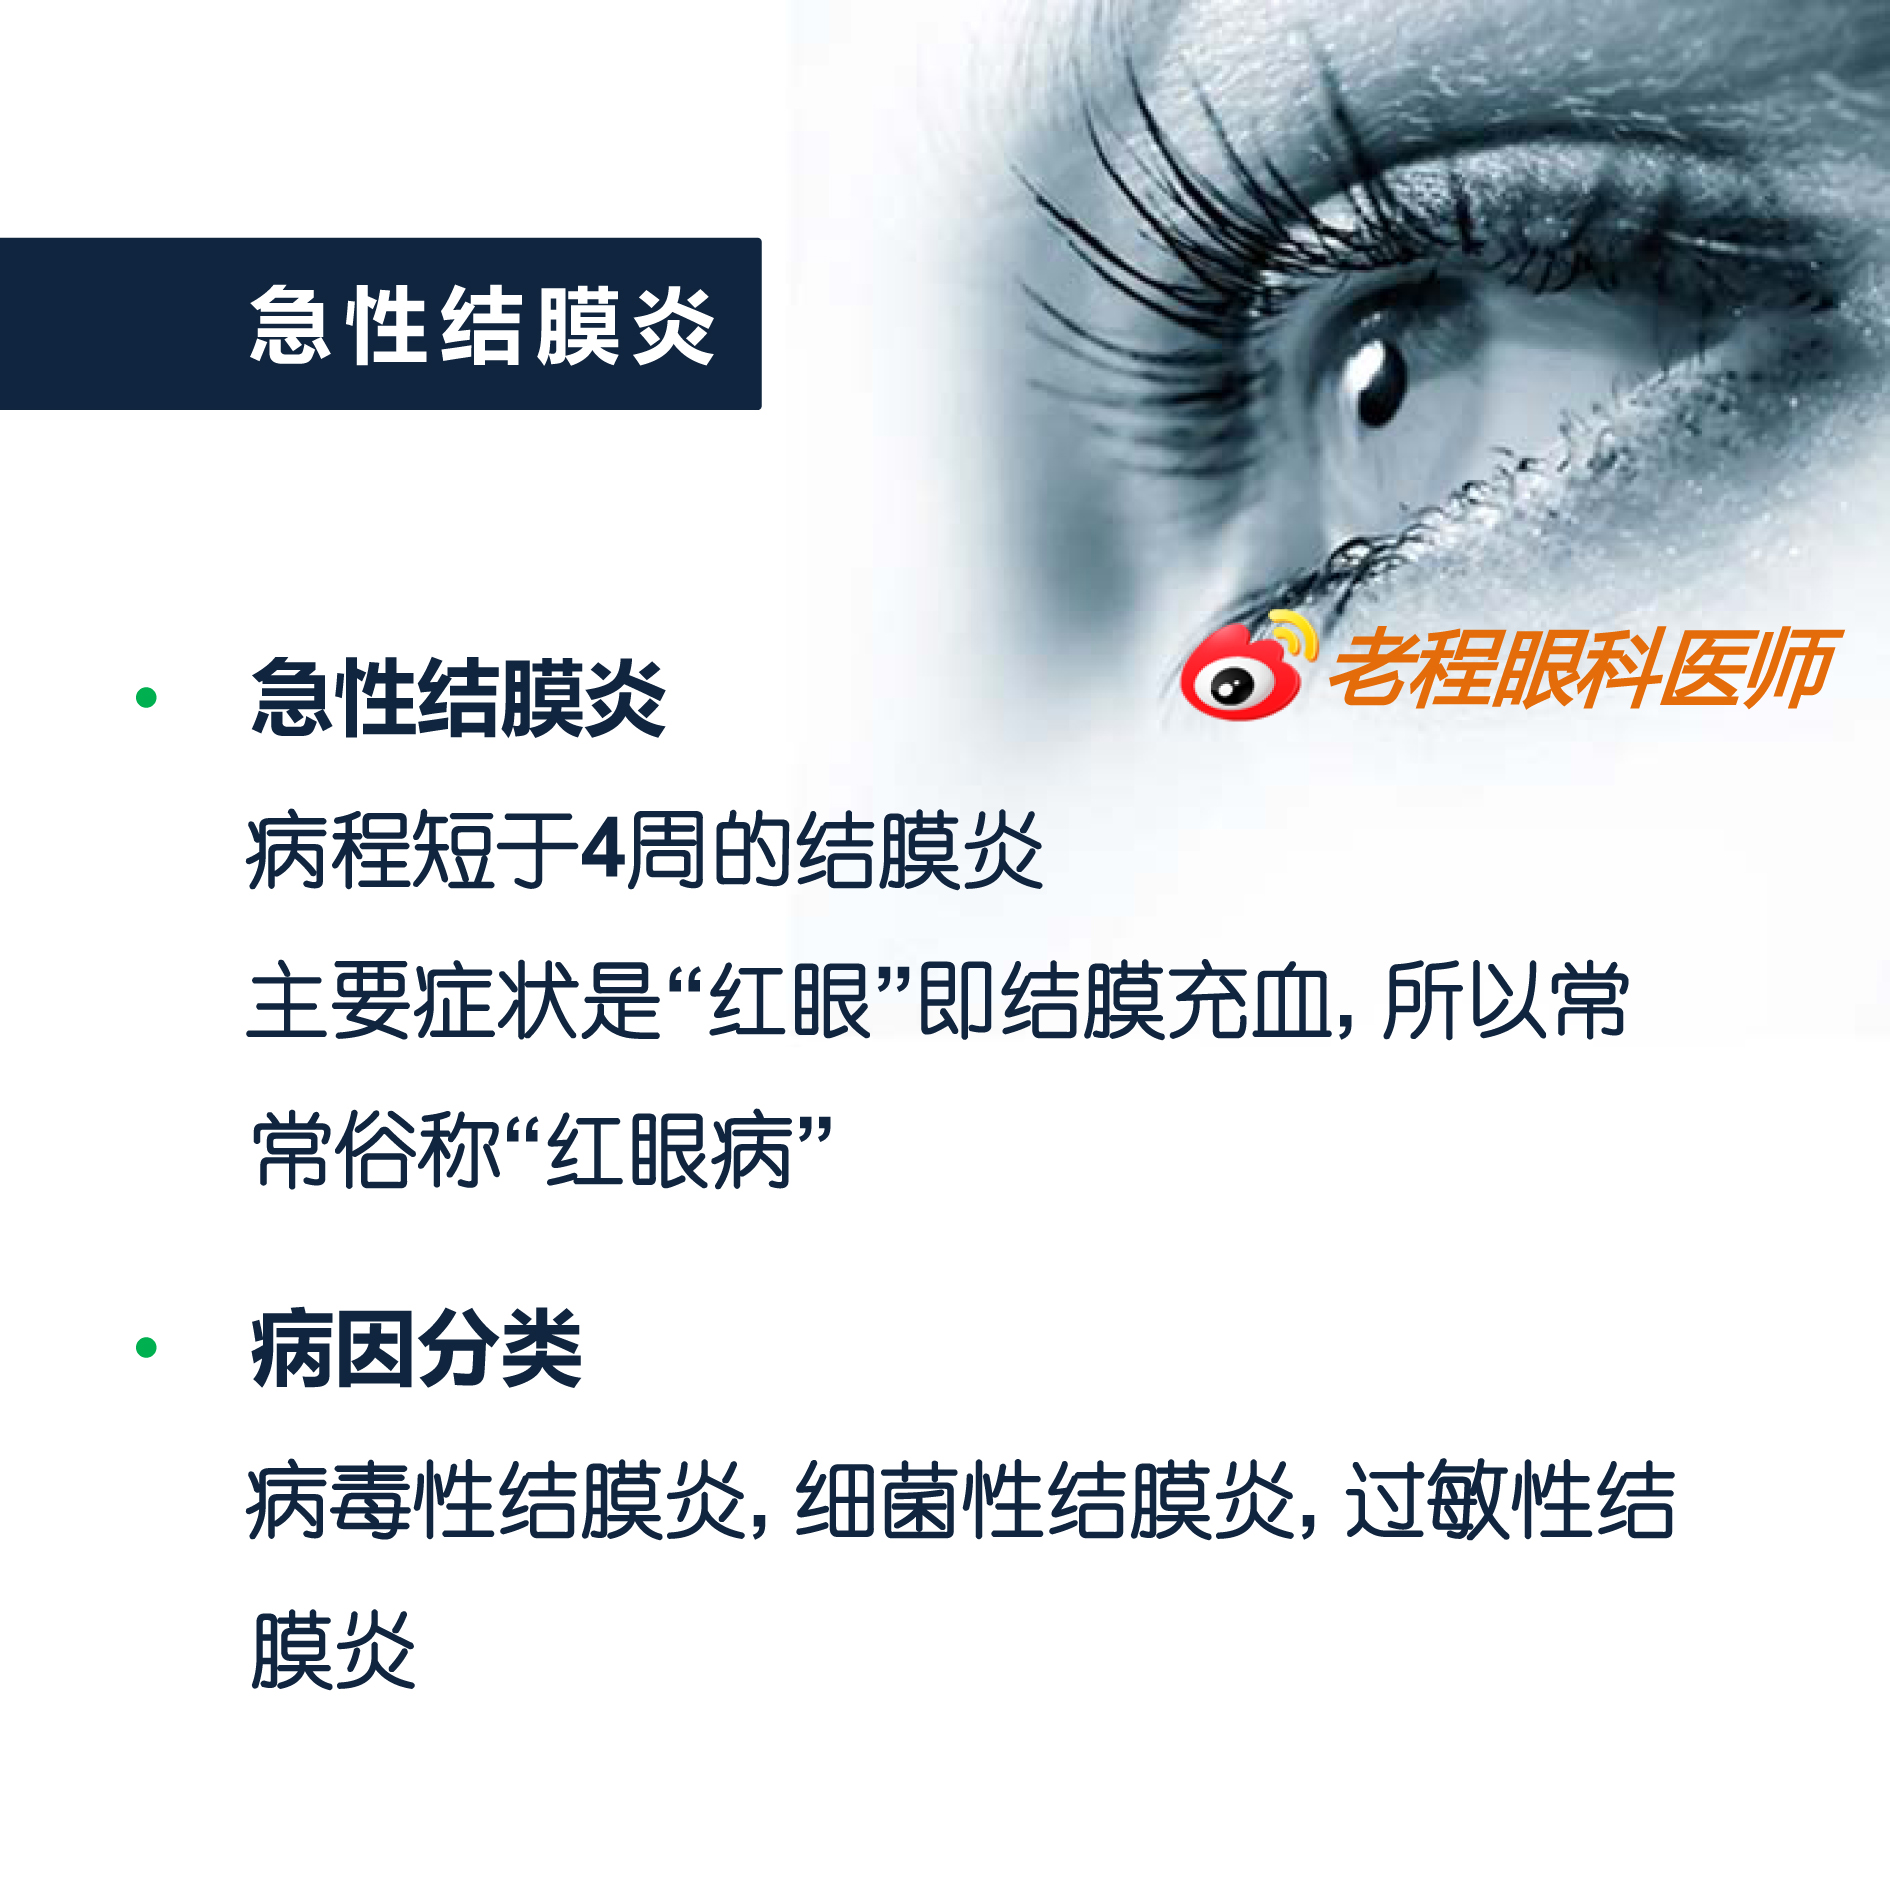 急性结膜炎,主要症状是红眼即结膜充血,常常俗称红眼病,包括病毒